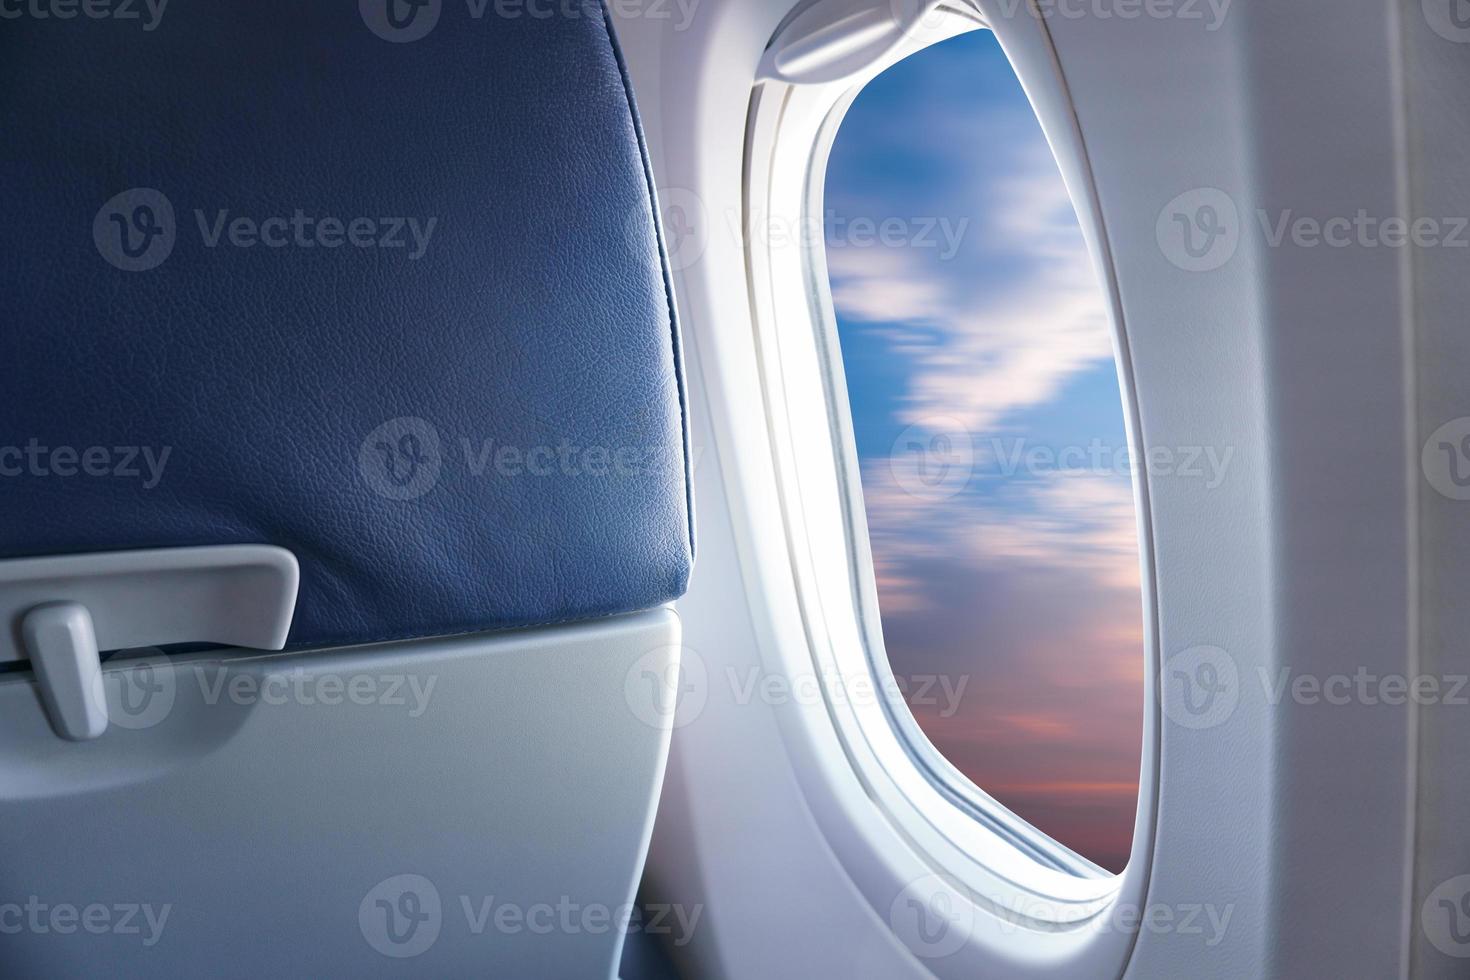 vista da janela do avião, ver o céu azul ou céu azul e nuvens da janela do avião foto